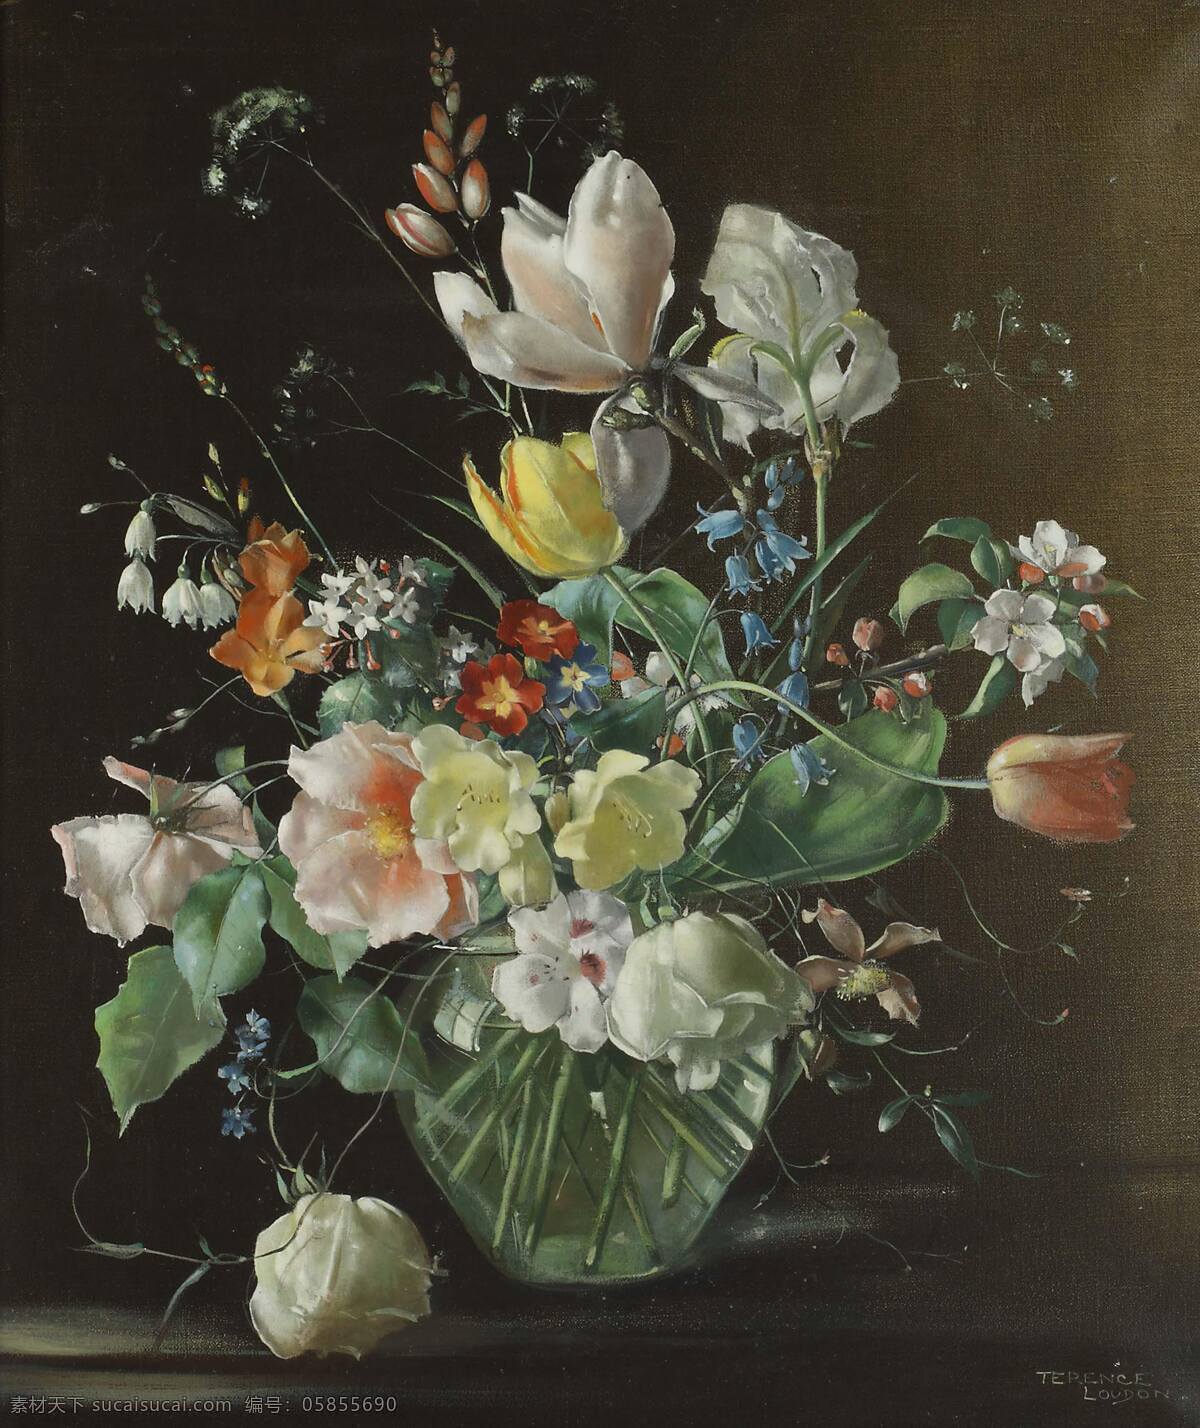 静物花卉 混搭鲜花 栀子花 郁金香 鸢尾 玲兰 玻璃花瓶 20世纪油画 油画 文化艺术 绘画书法